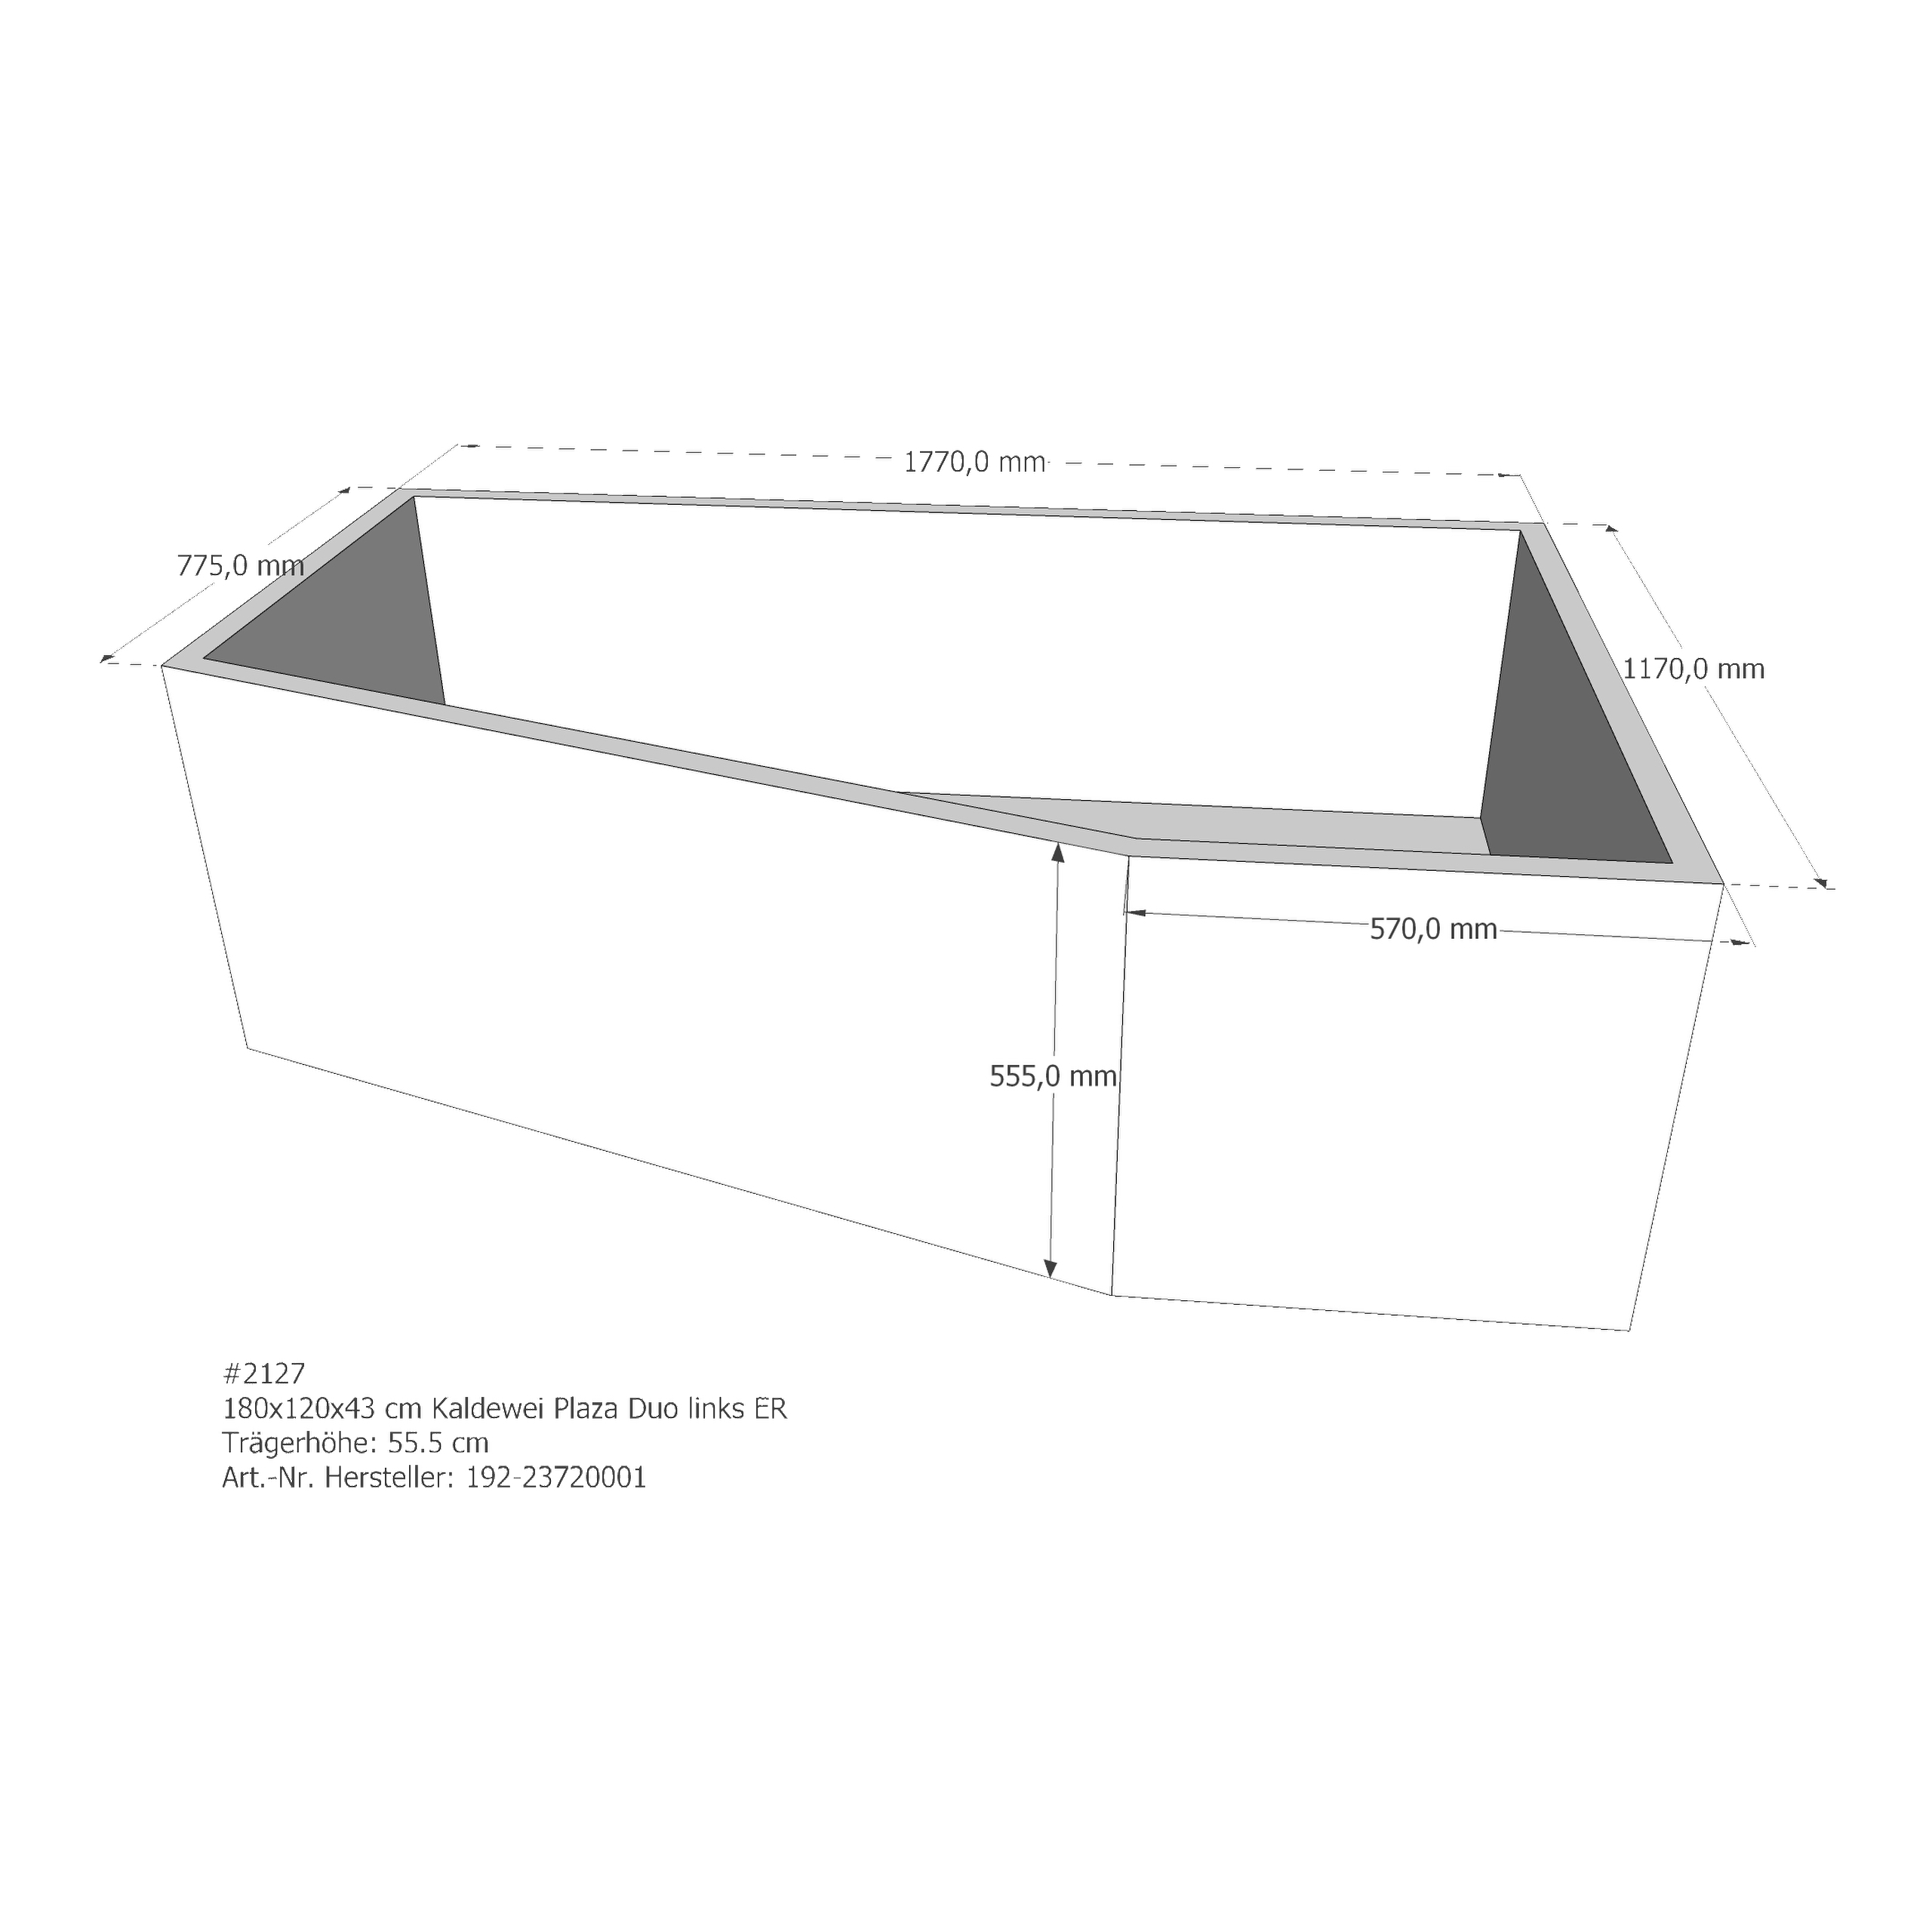 Badewannenträger für Kaldewei Plaza Duo links 180 × 120 × 43 cm